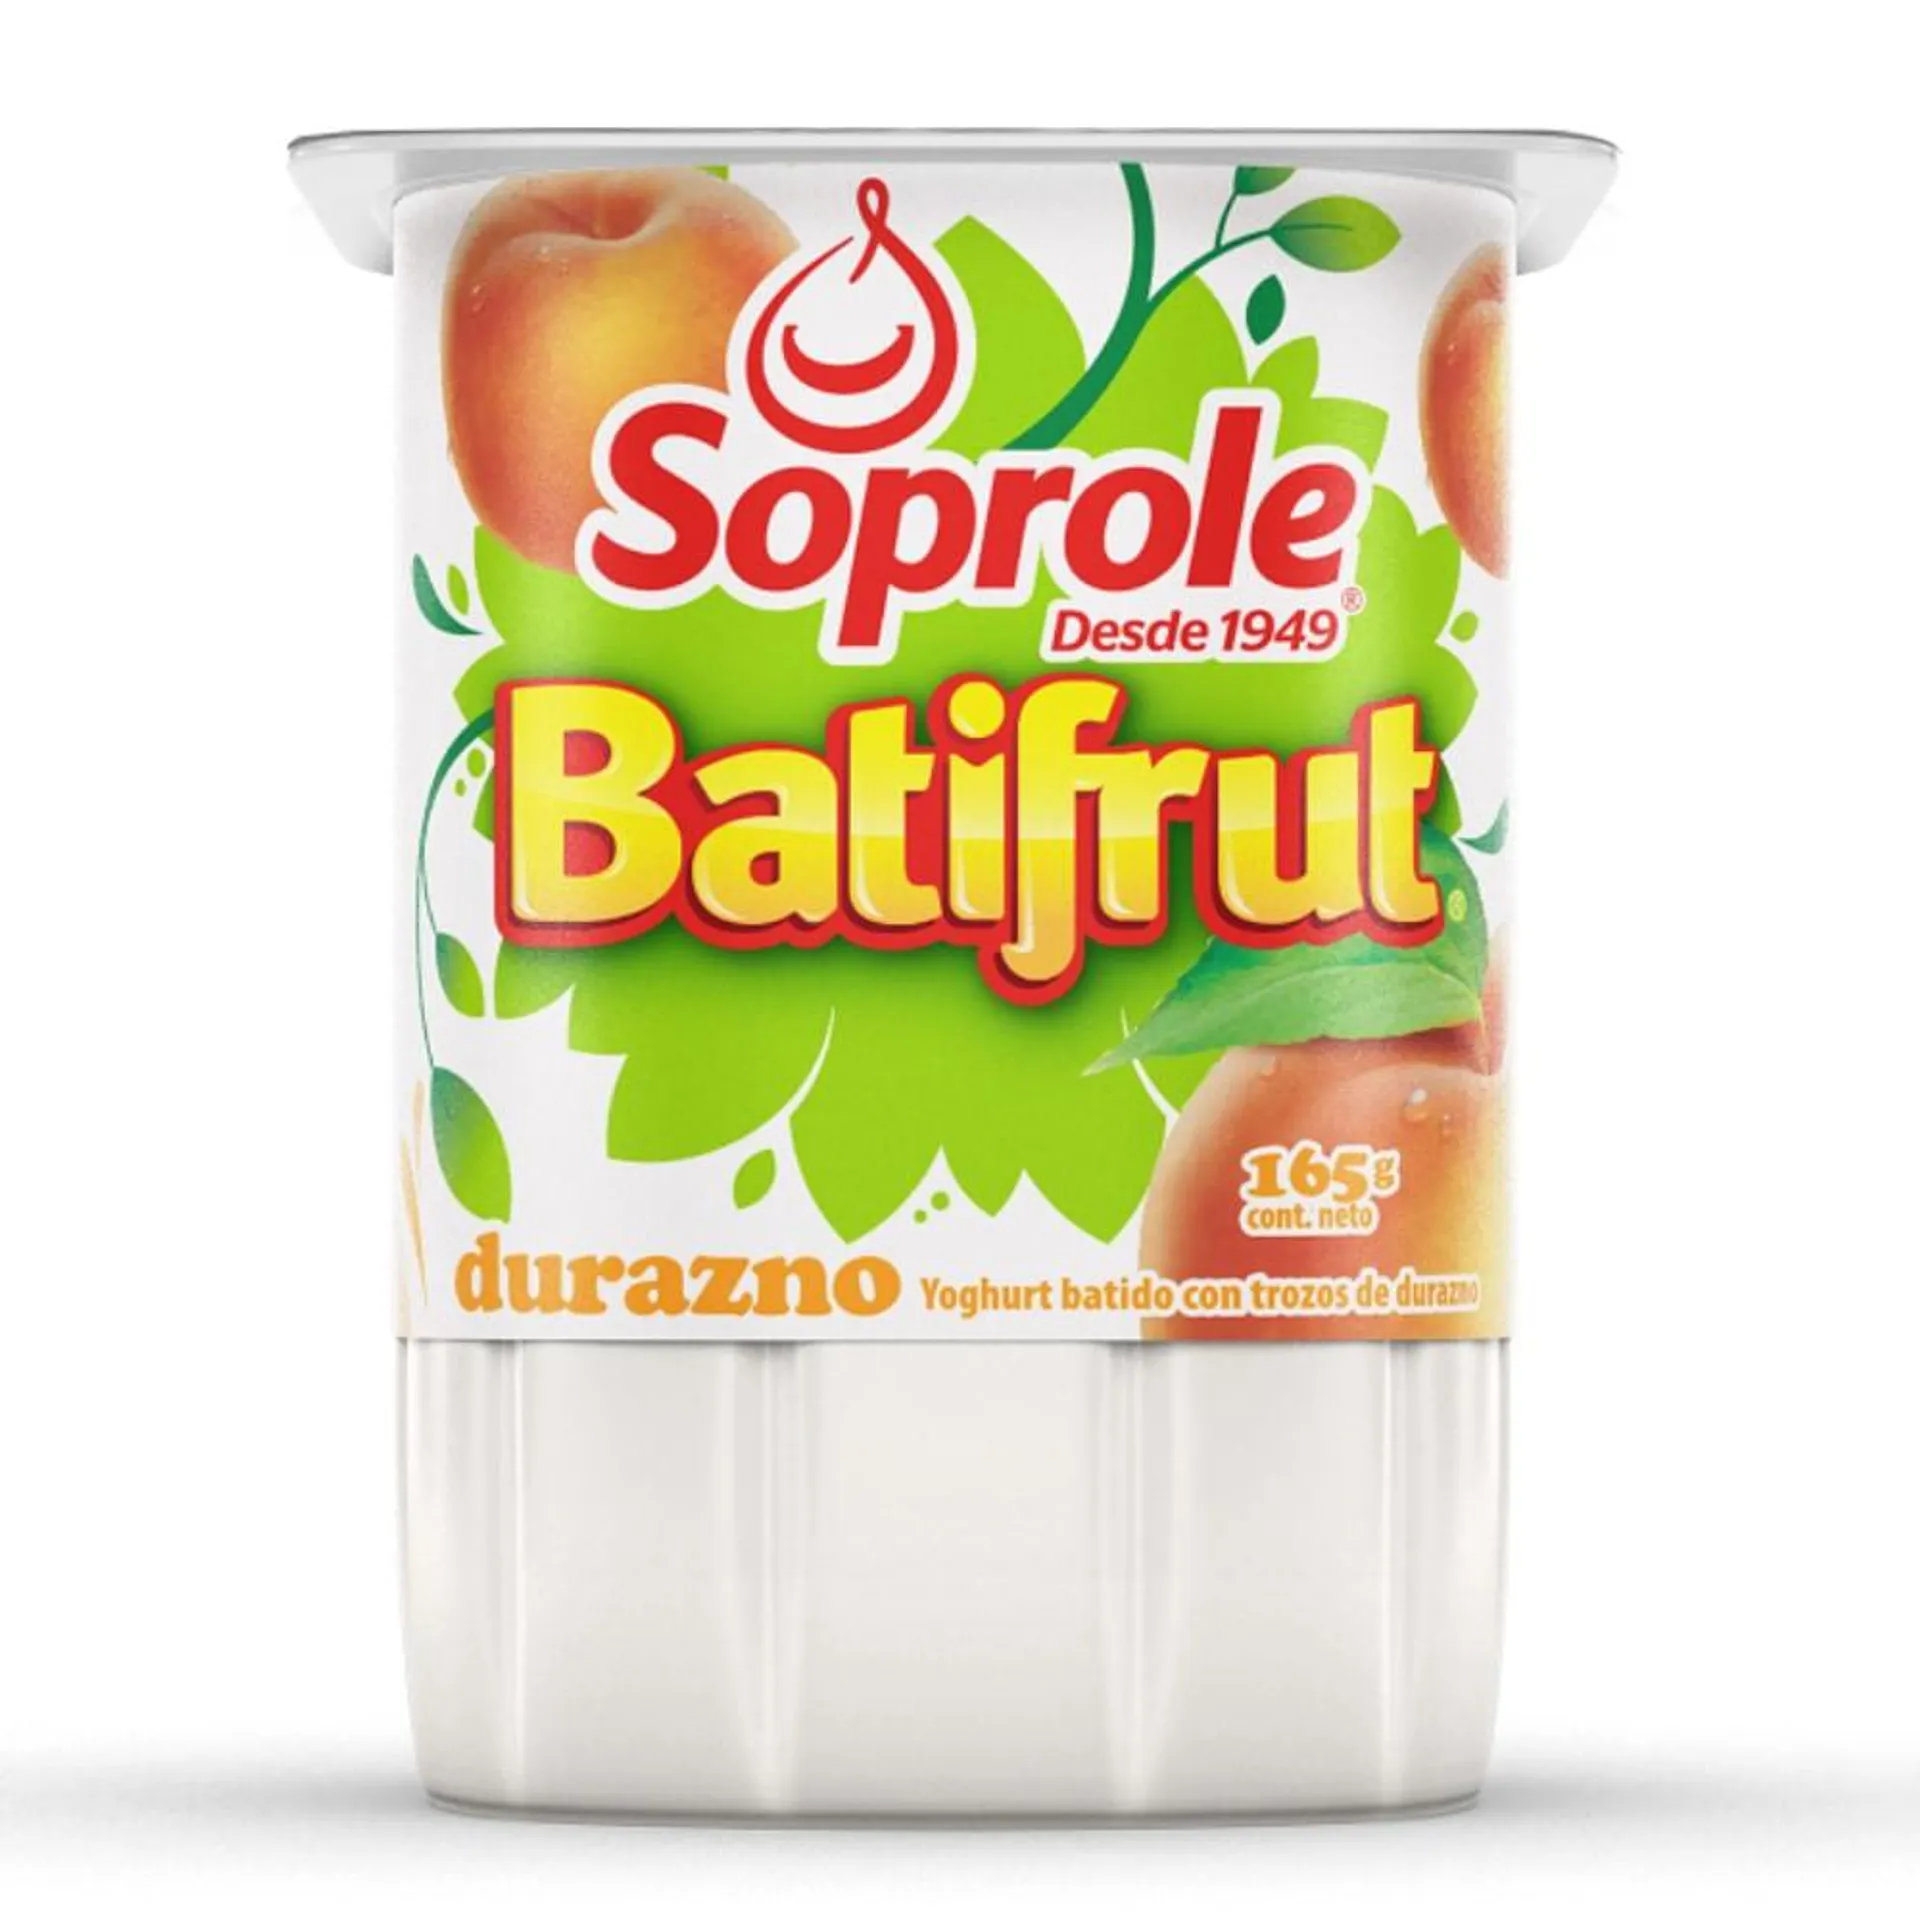 Yoghurt Soprole Batifrut sabor durazno con trozos de fruta pote 165 g